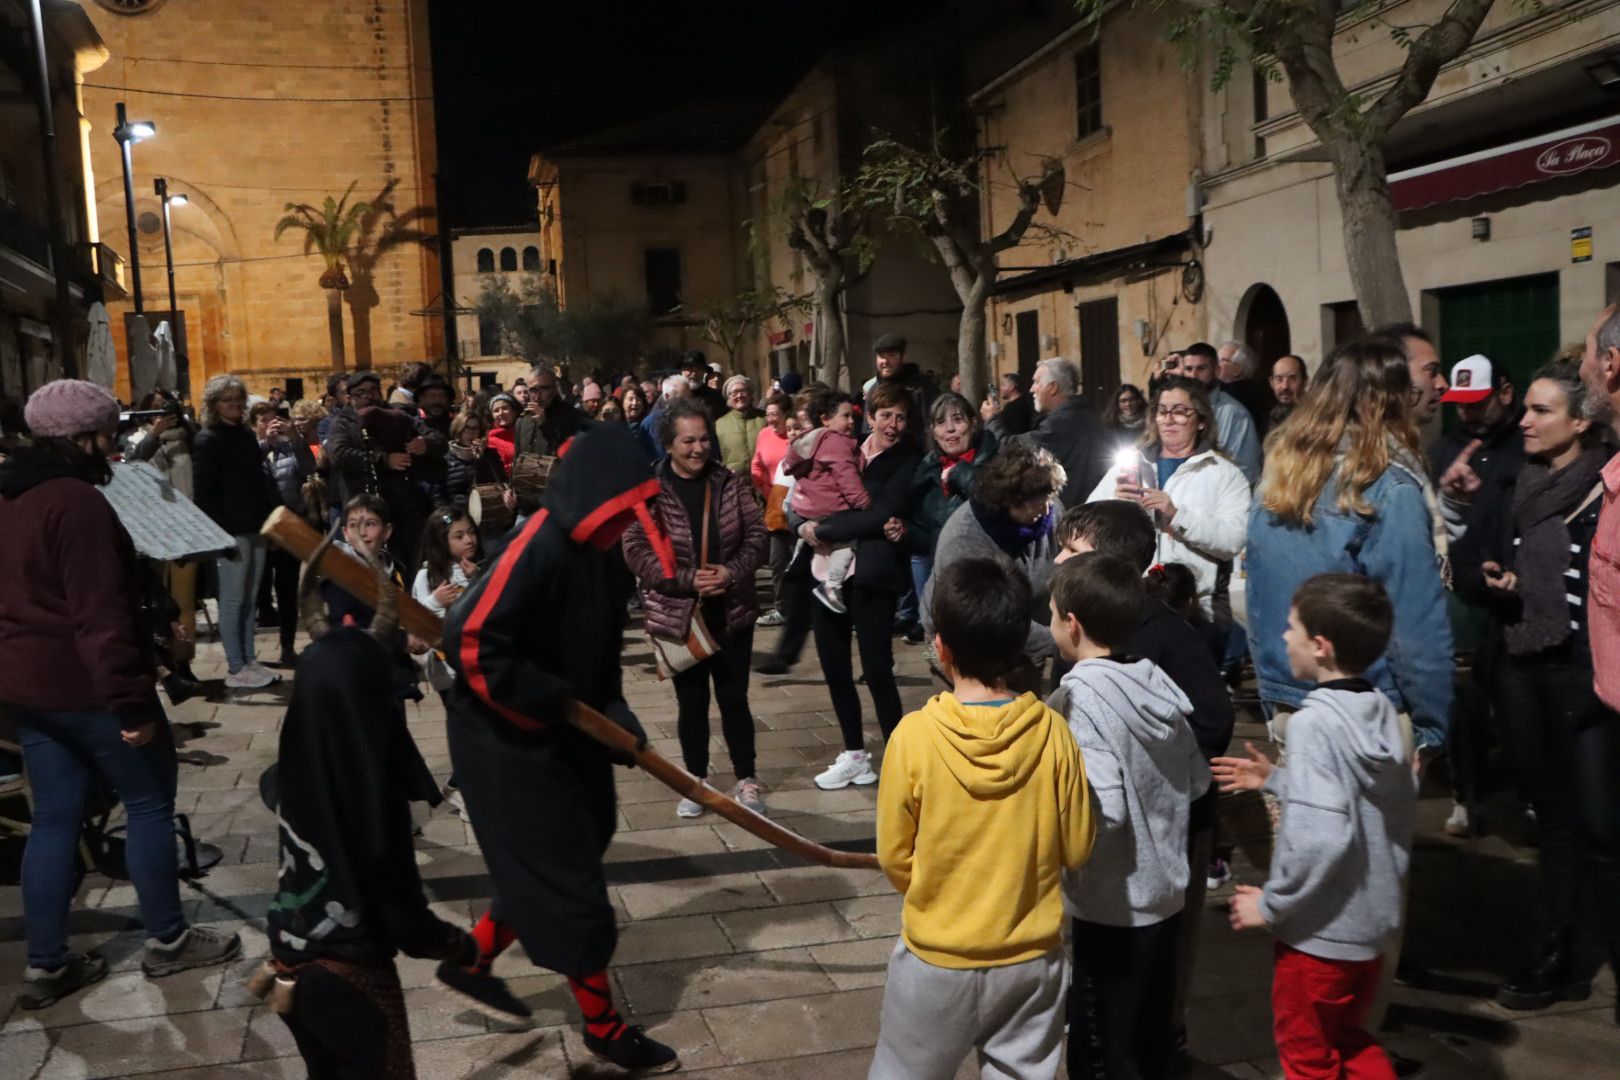 Arde la part forana: Las imágenes de la 'revetla' en distintos municipios de Mallorca